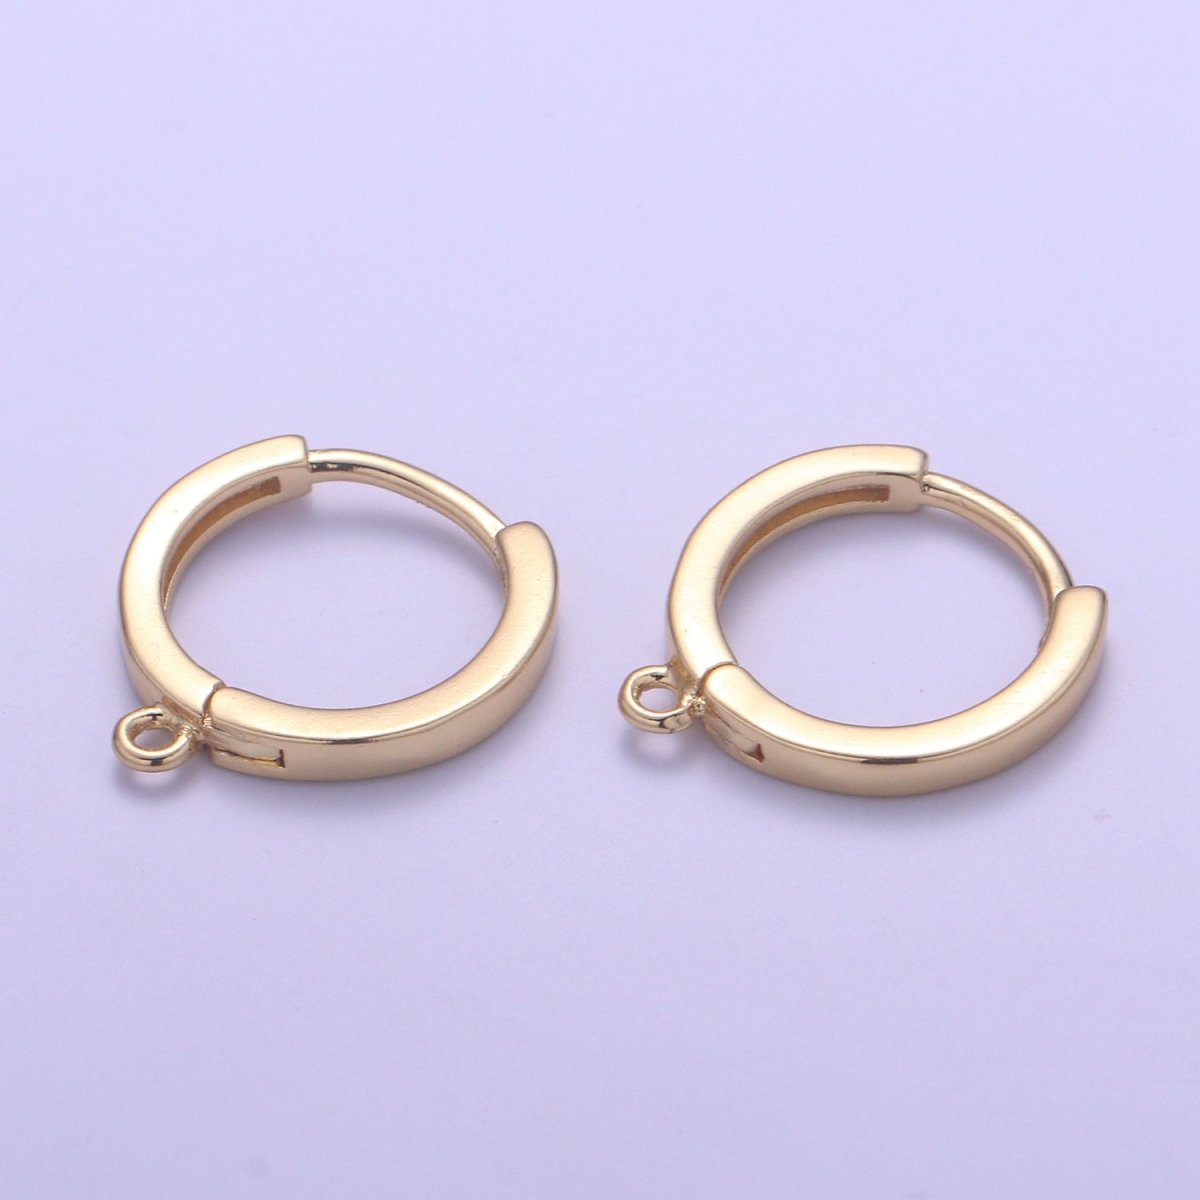 24k Gold Filled Huggies Open Loop Earrings Supplies | K-872 - DLUXCA